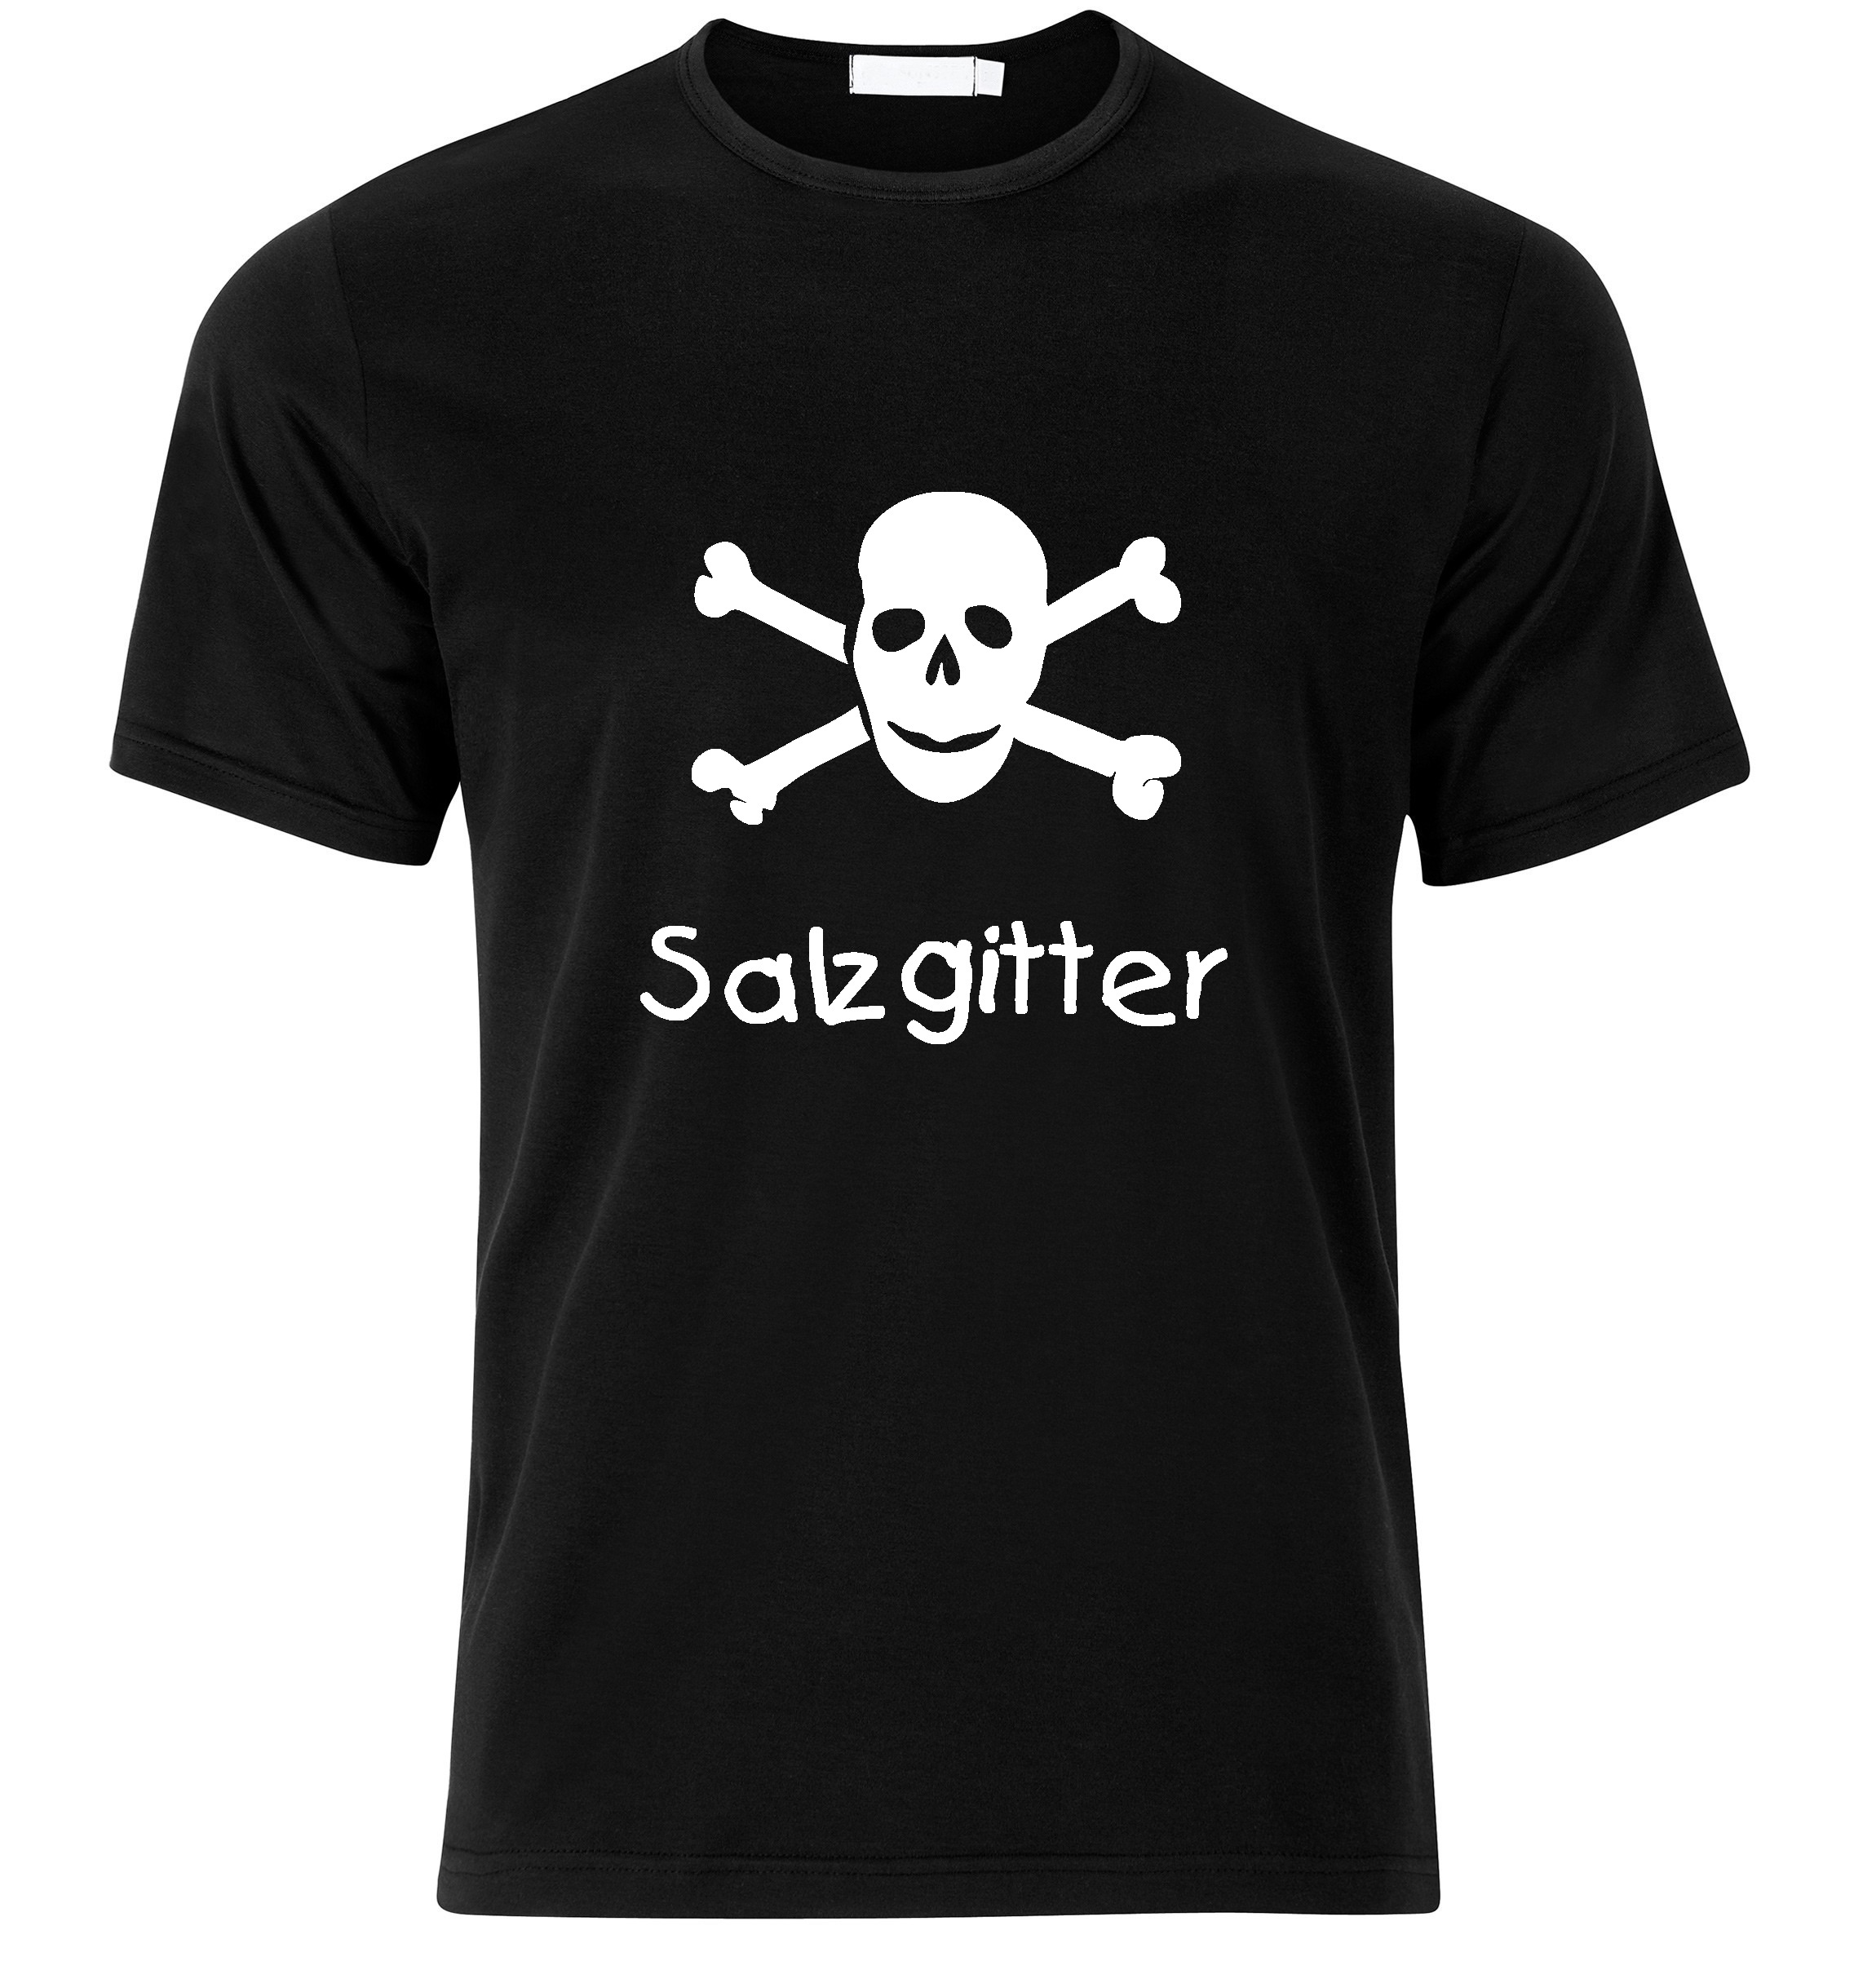 T-Shirt Salzgitter Jolly Roger, Totenkopf